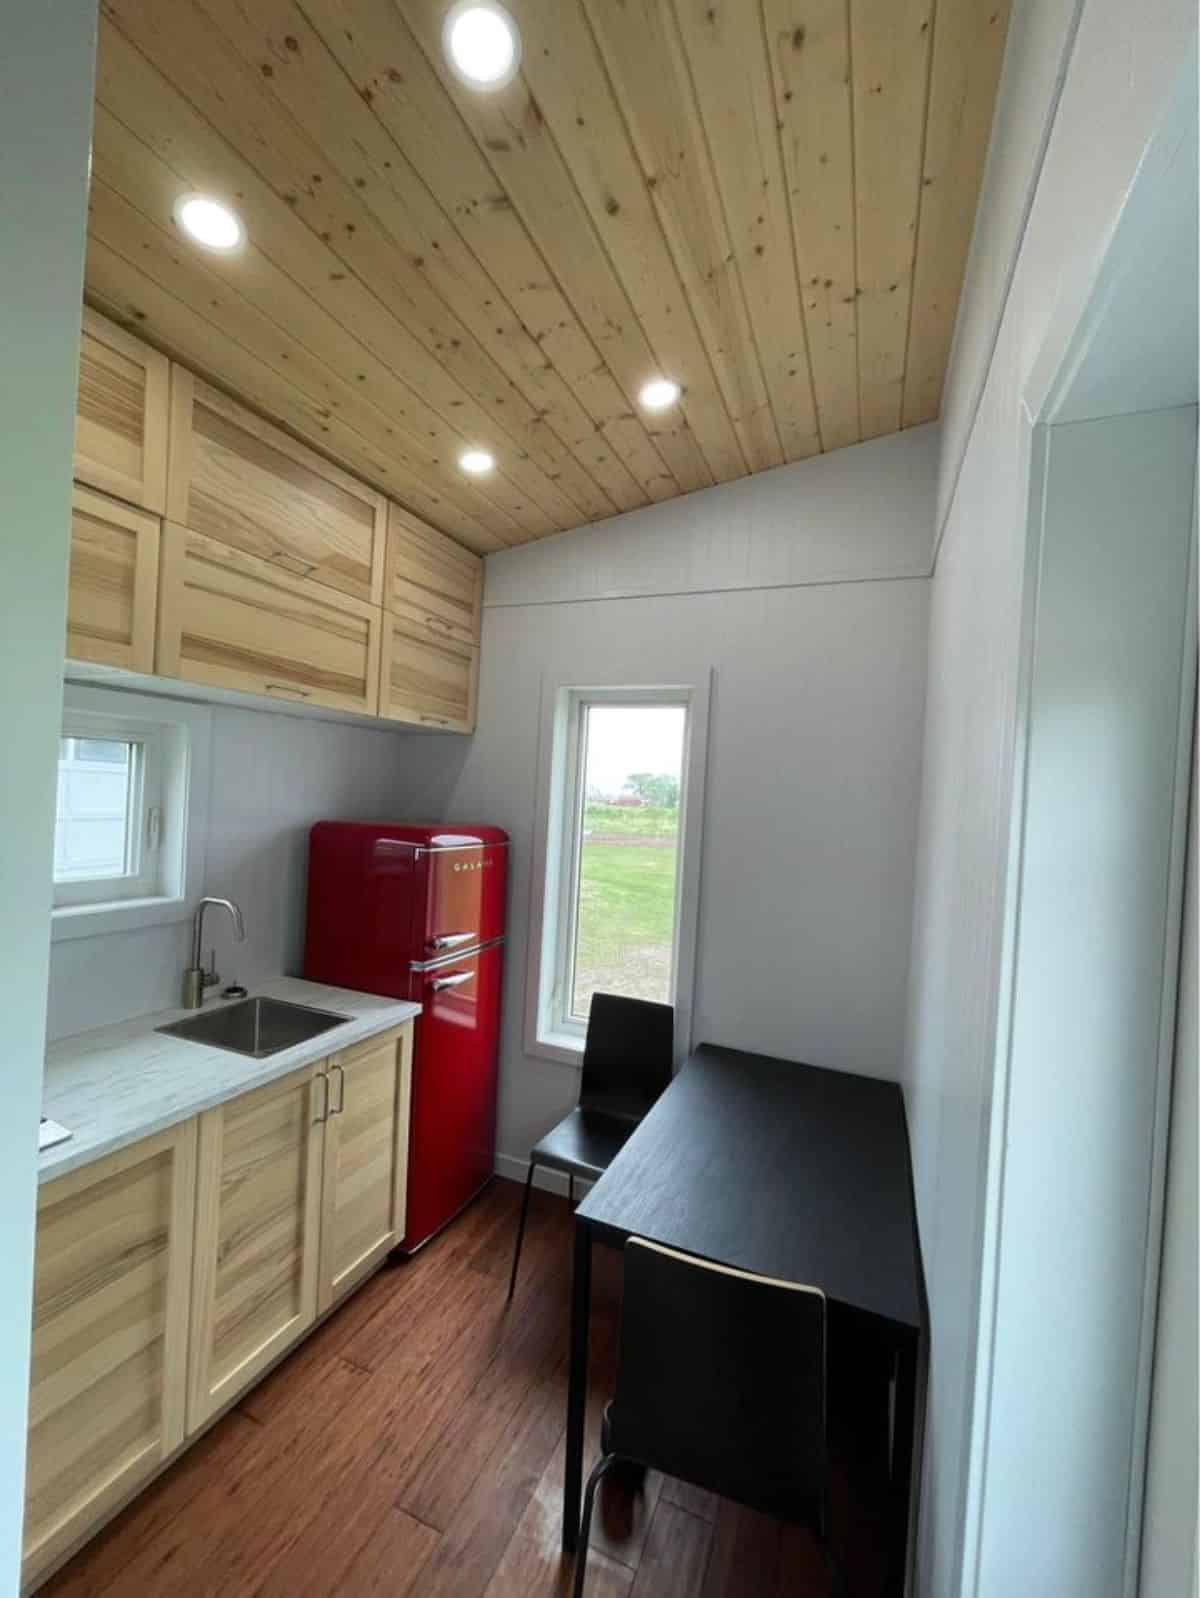 kitchen area with huge countertop and double door refrigerator